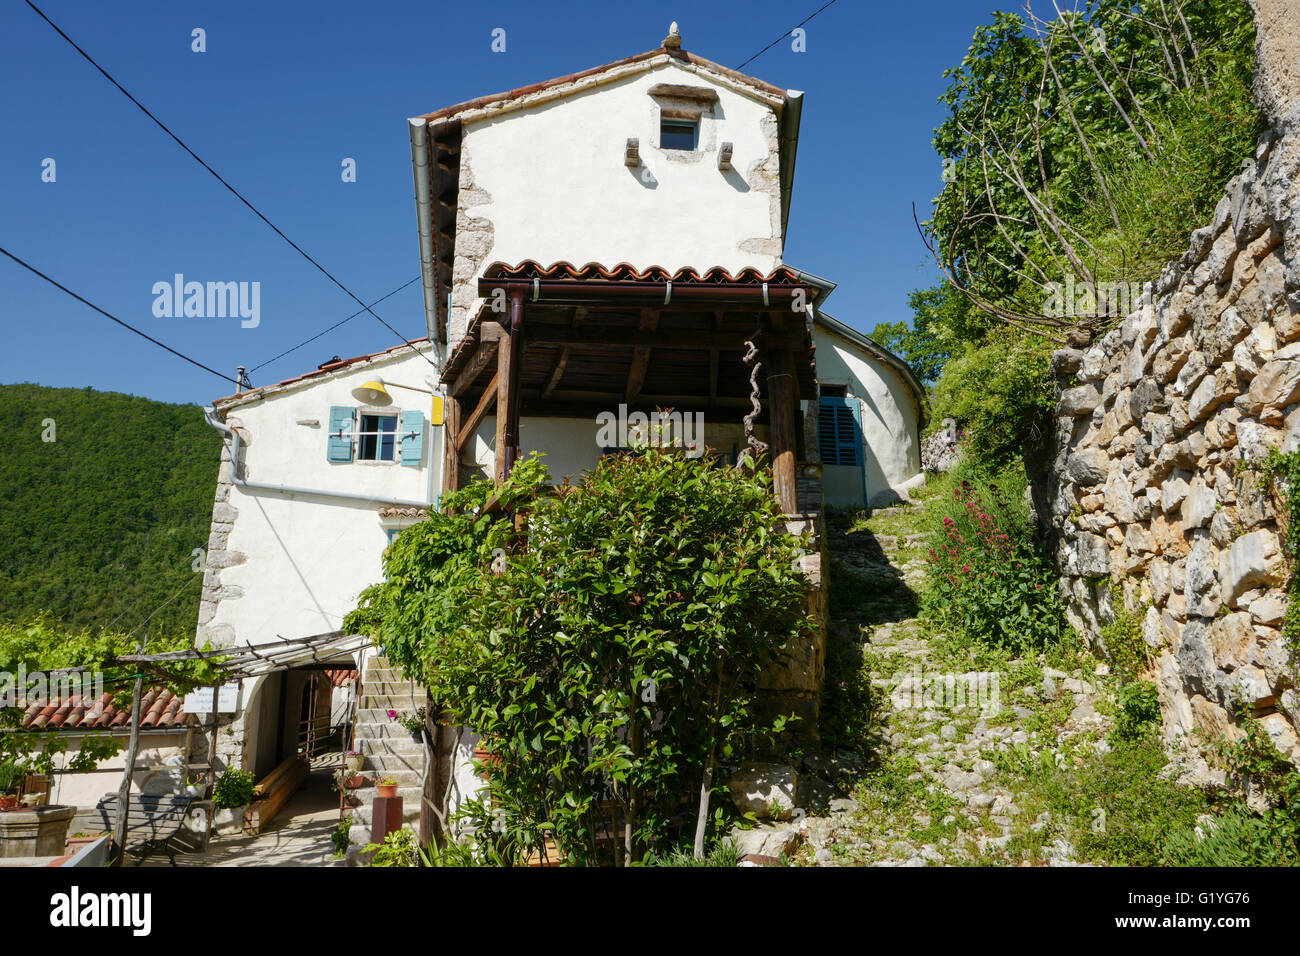 Vieille ruelle pavée dans le joli village perché de Sucici, Istrie, Croatie Banque D'Images